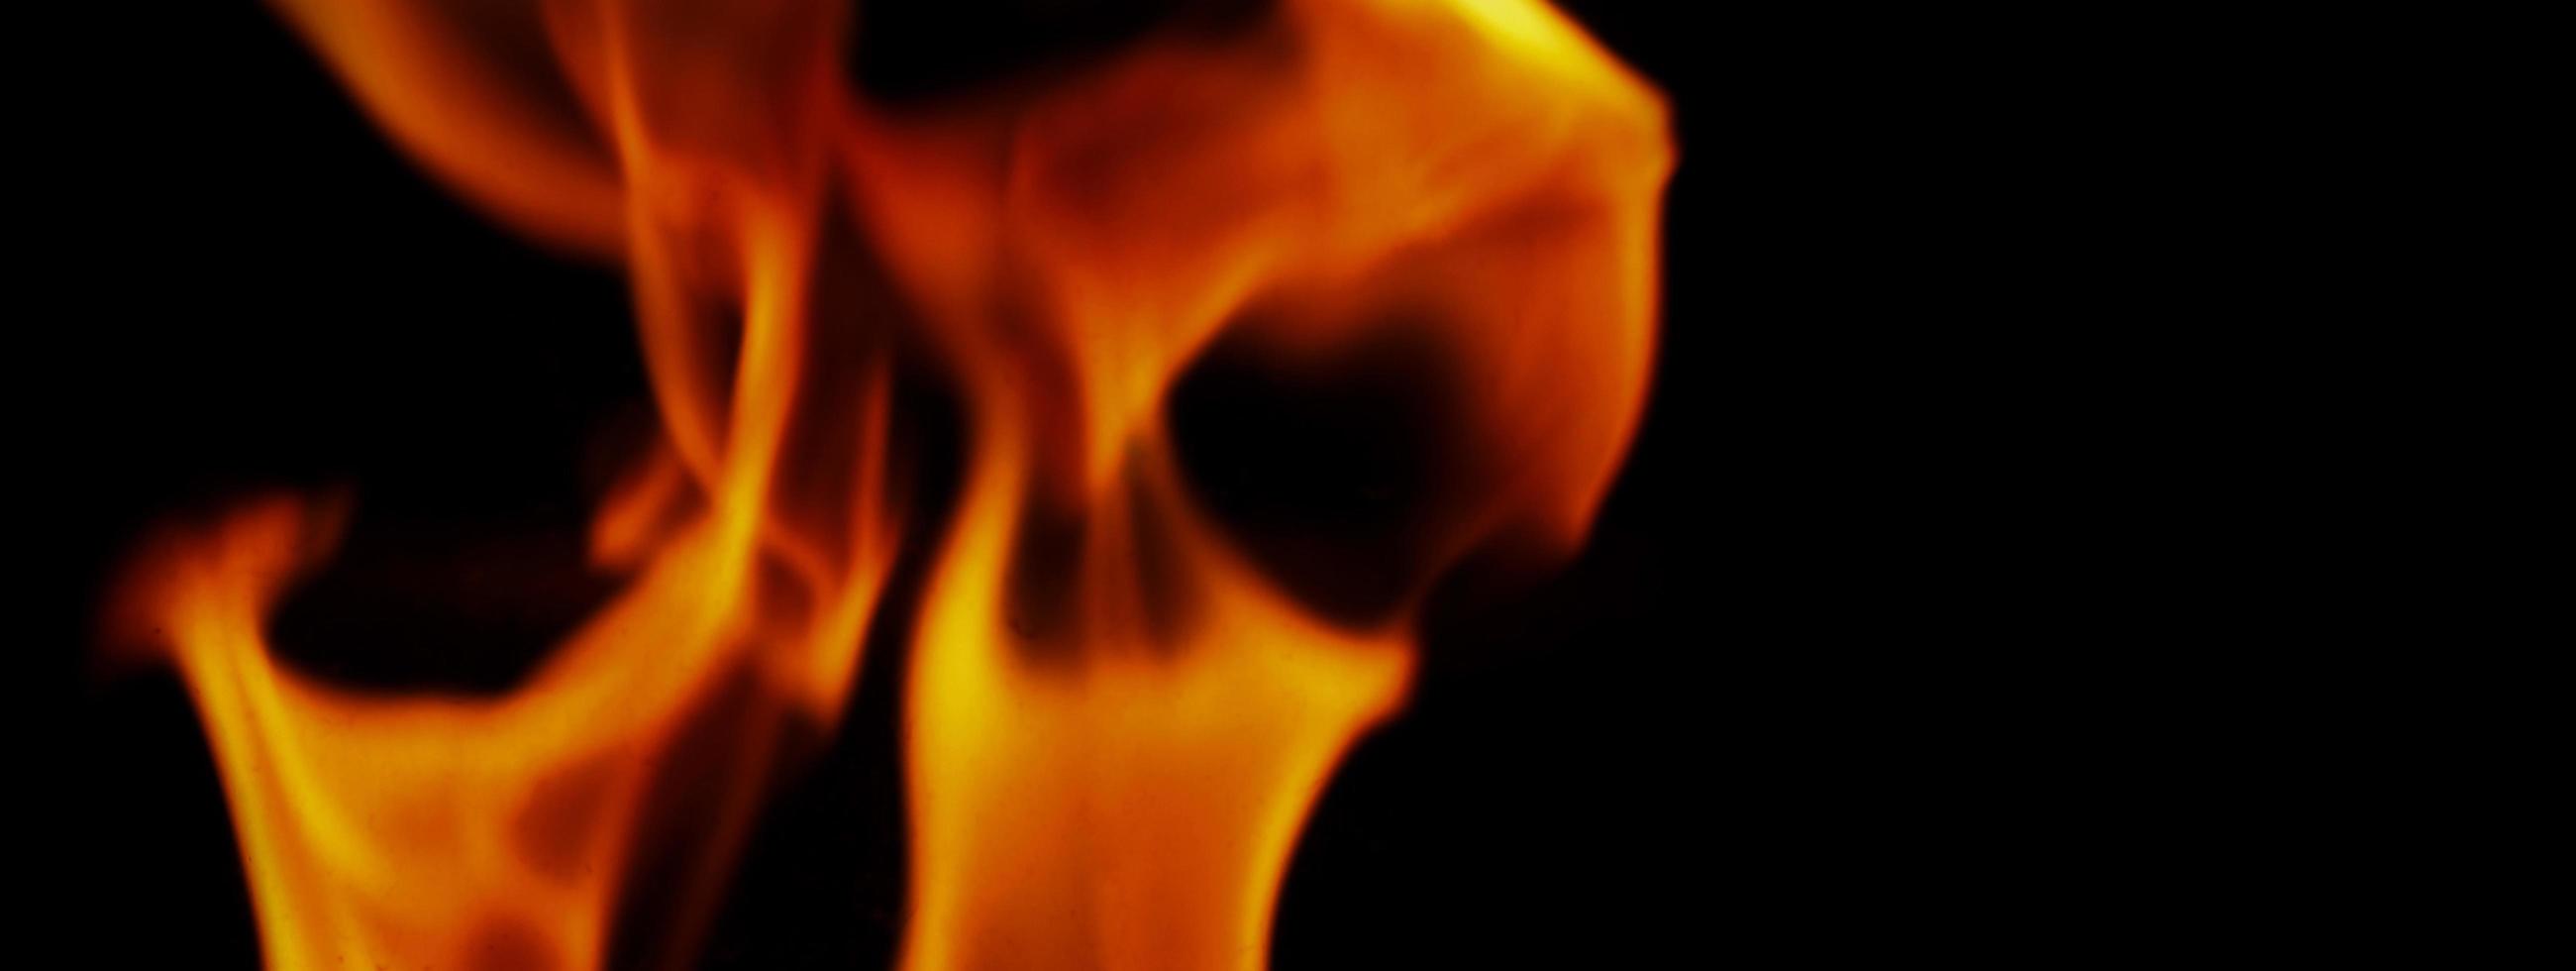 brand achtergrond. abstracte brandende vlam en zwarte achtergrond. foto